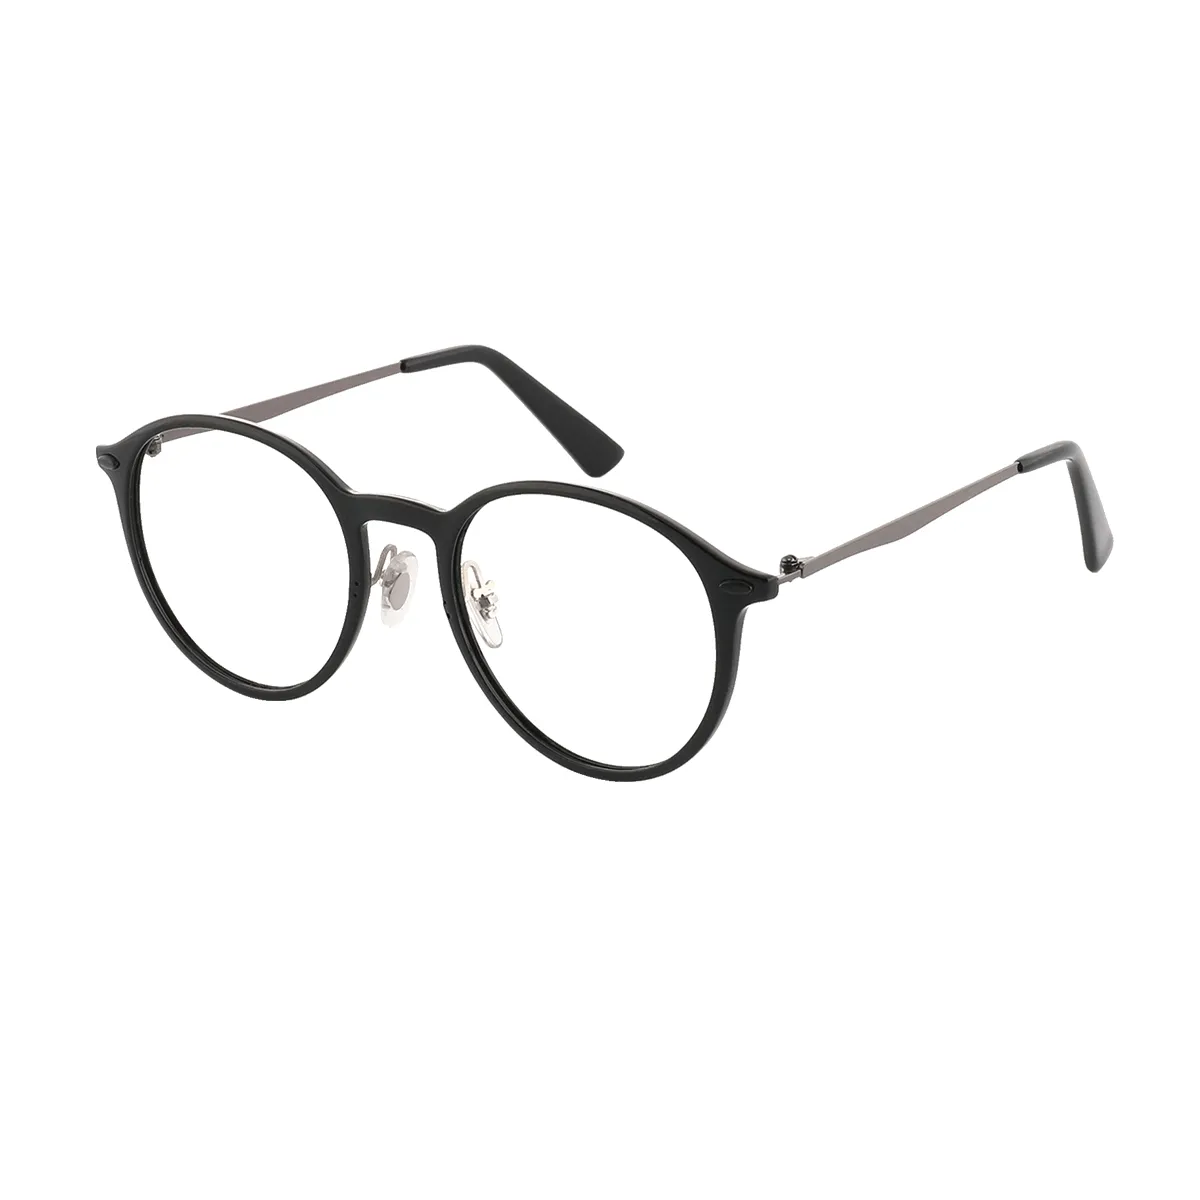 Classic Oval Black-Gold Glasses for Men & Women